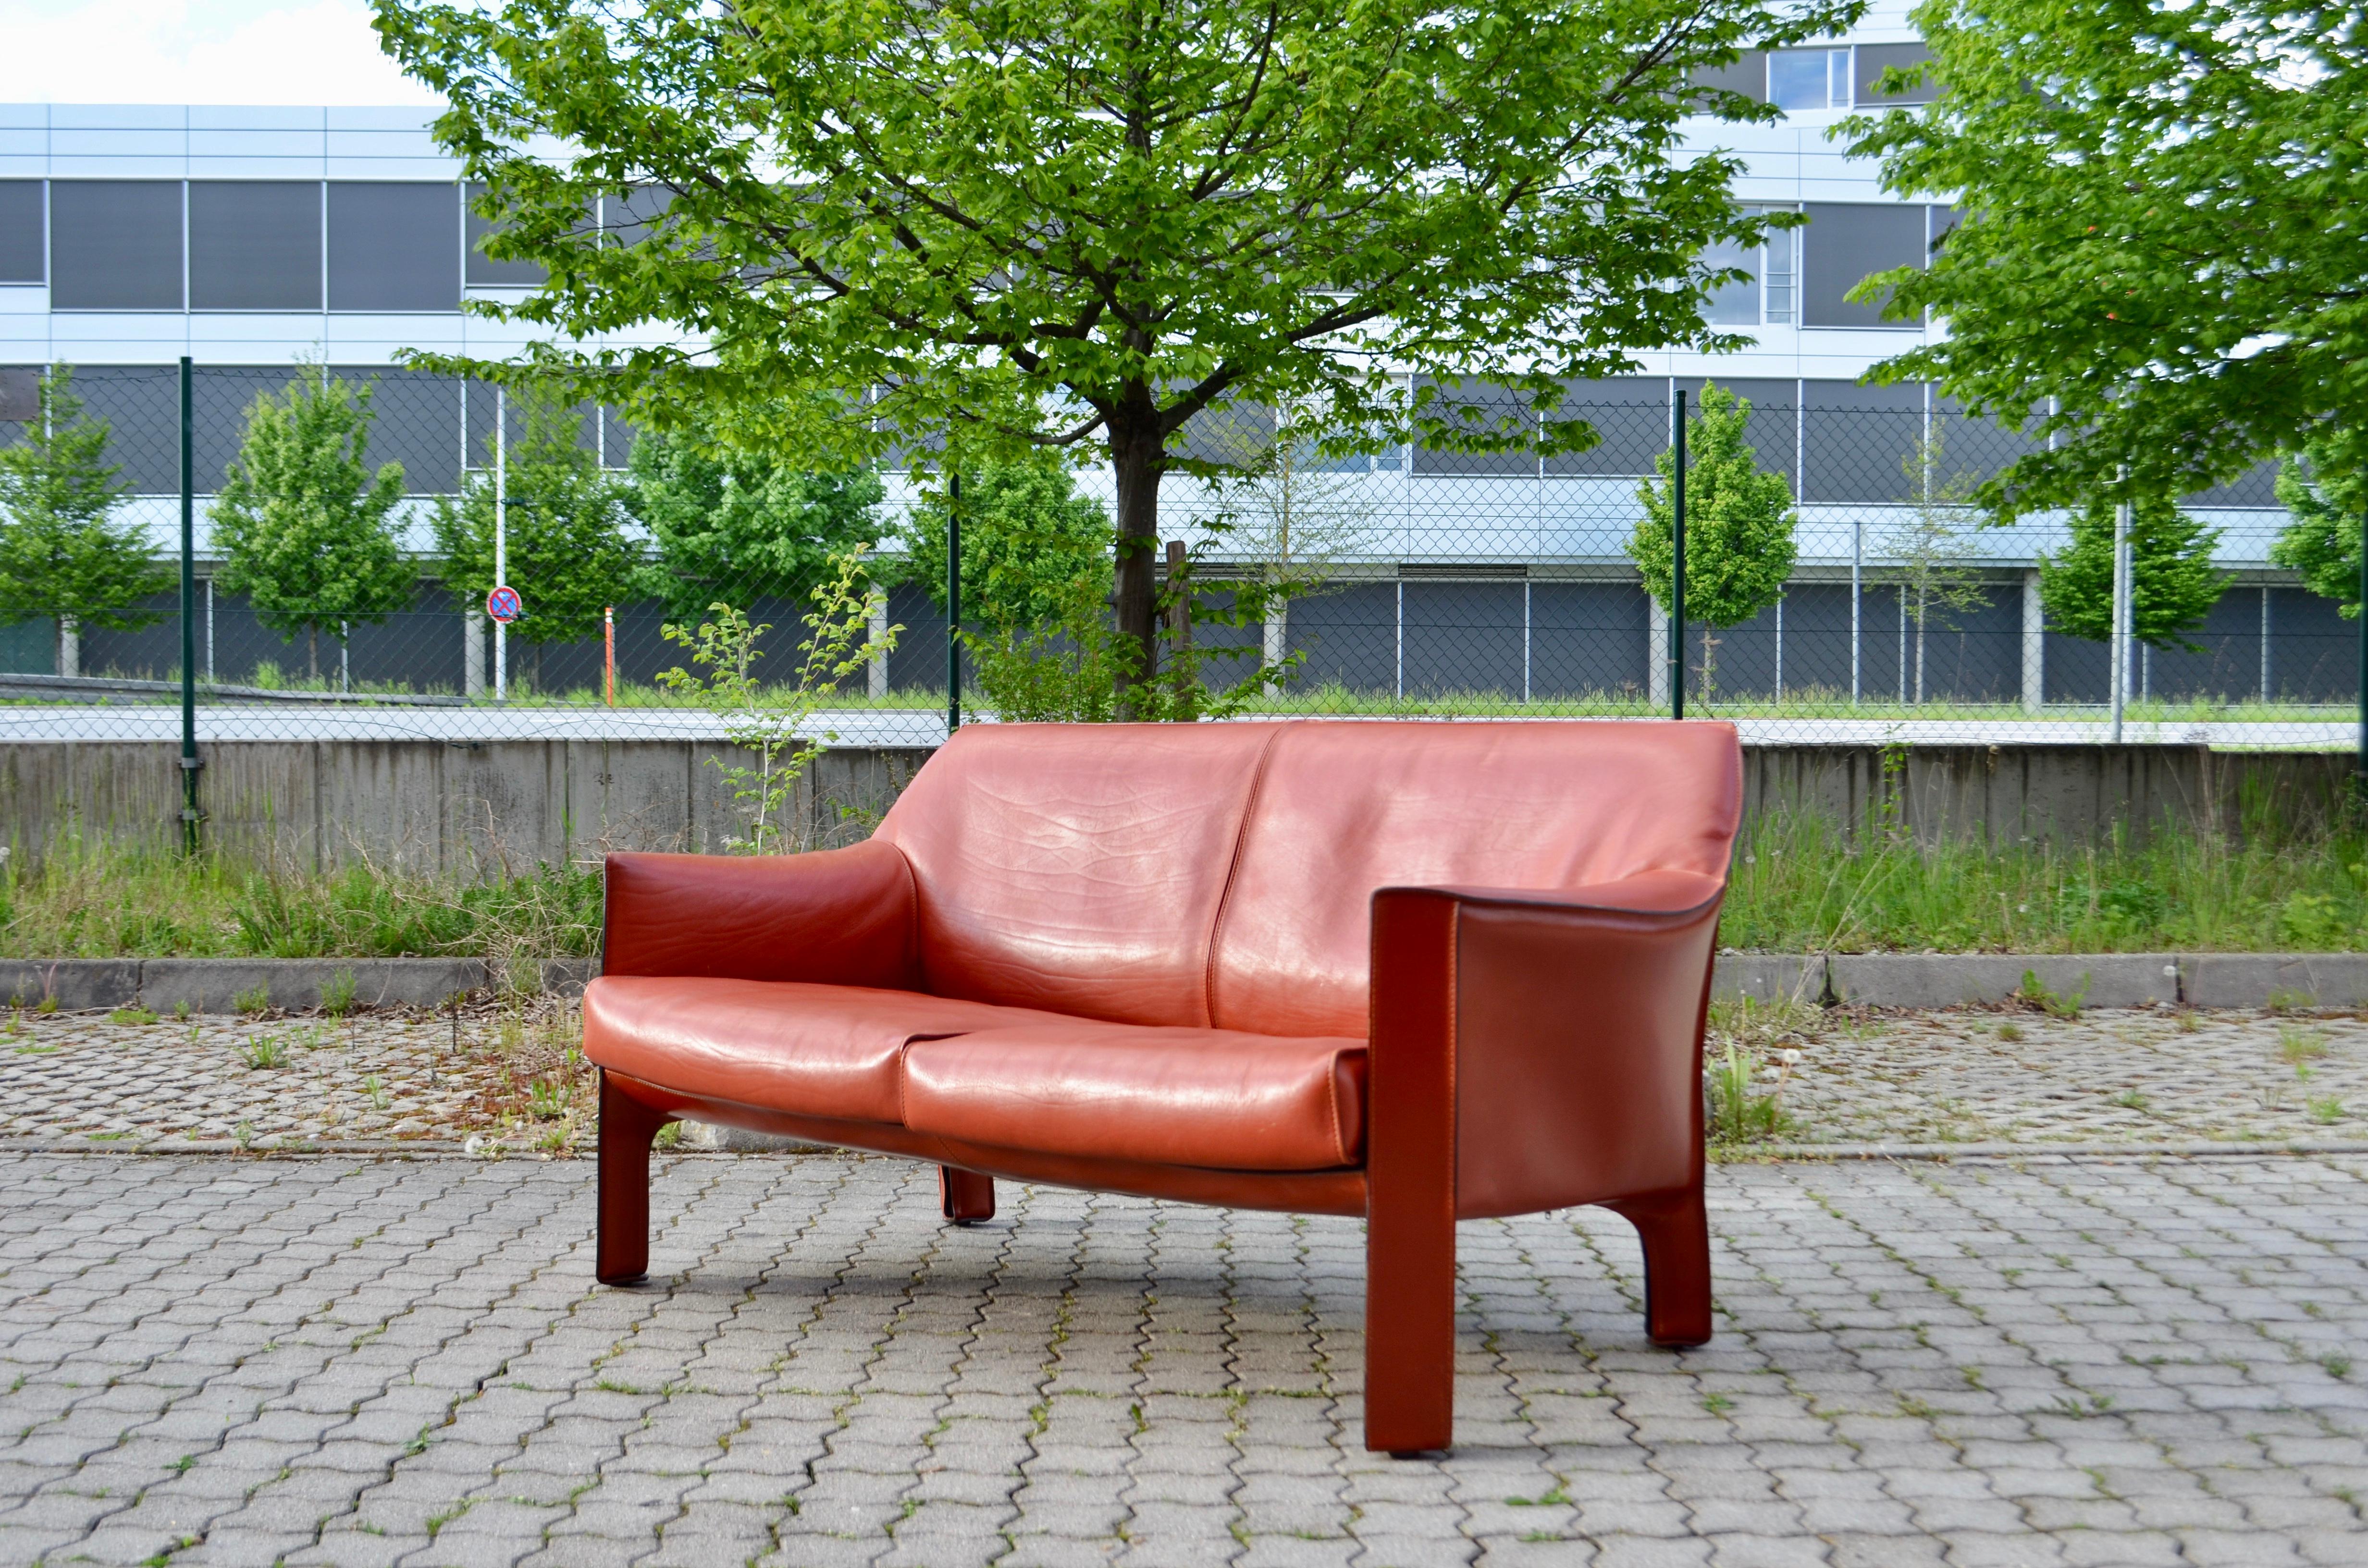 cassina leather sofa